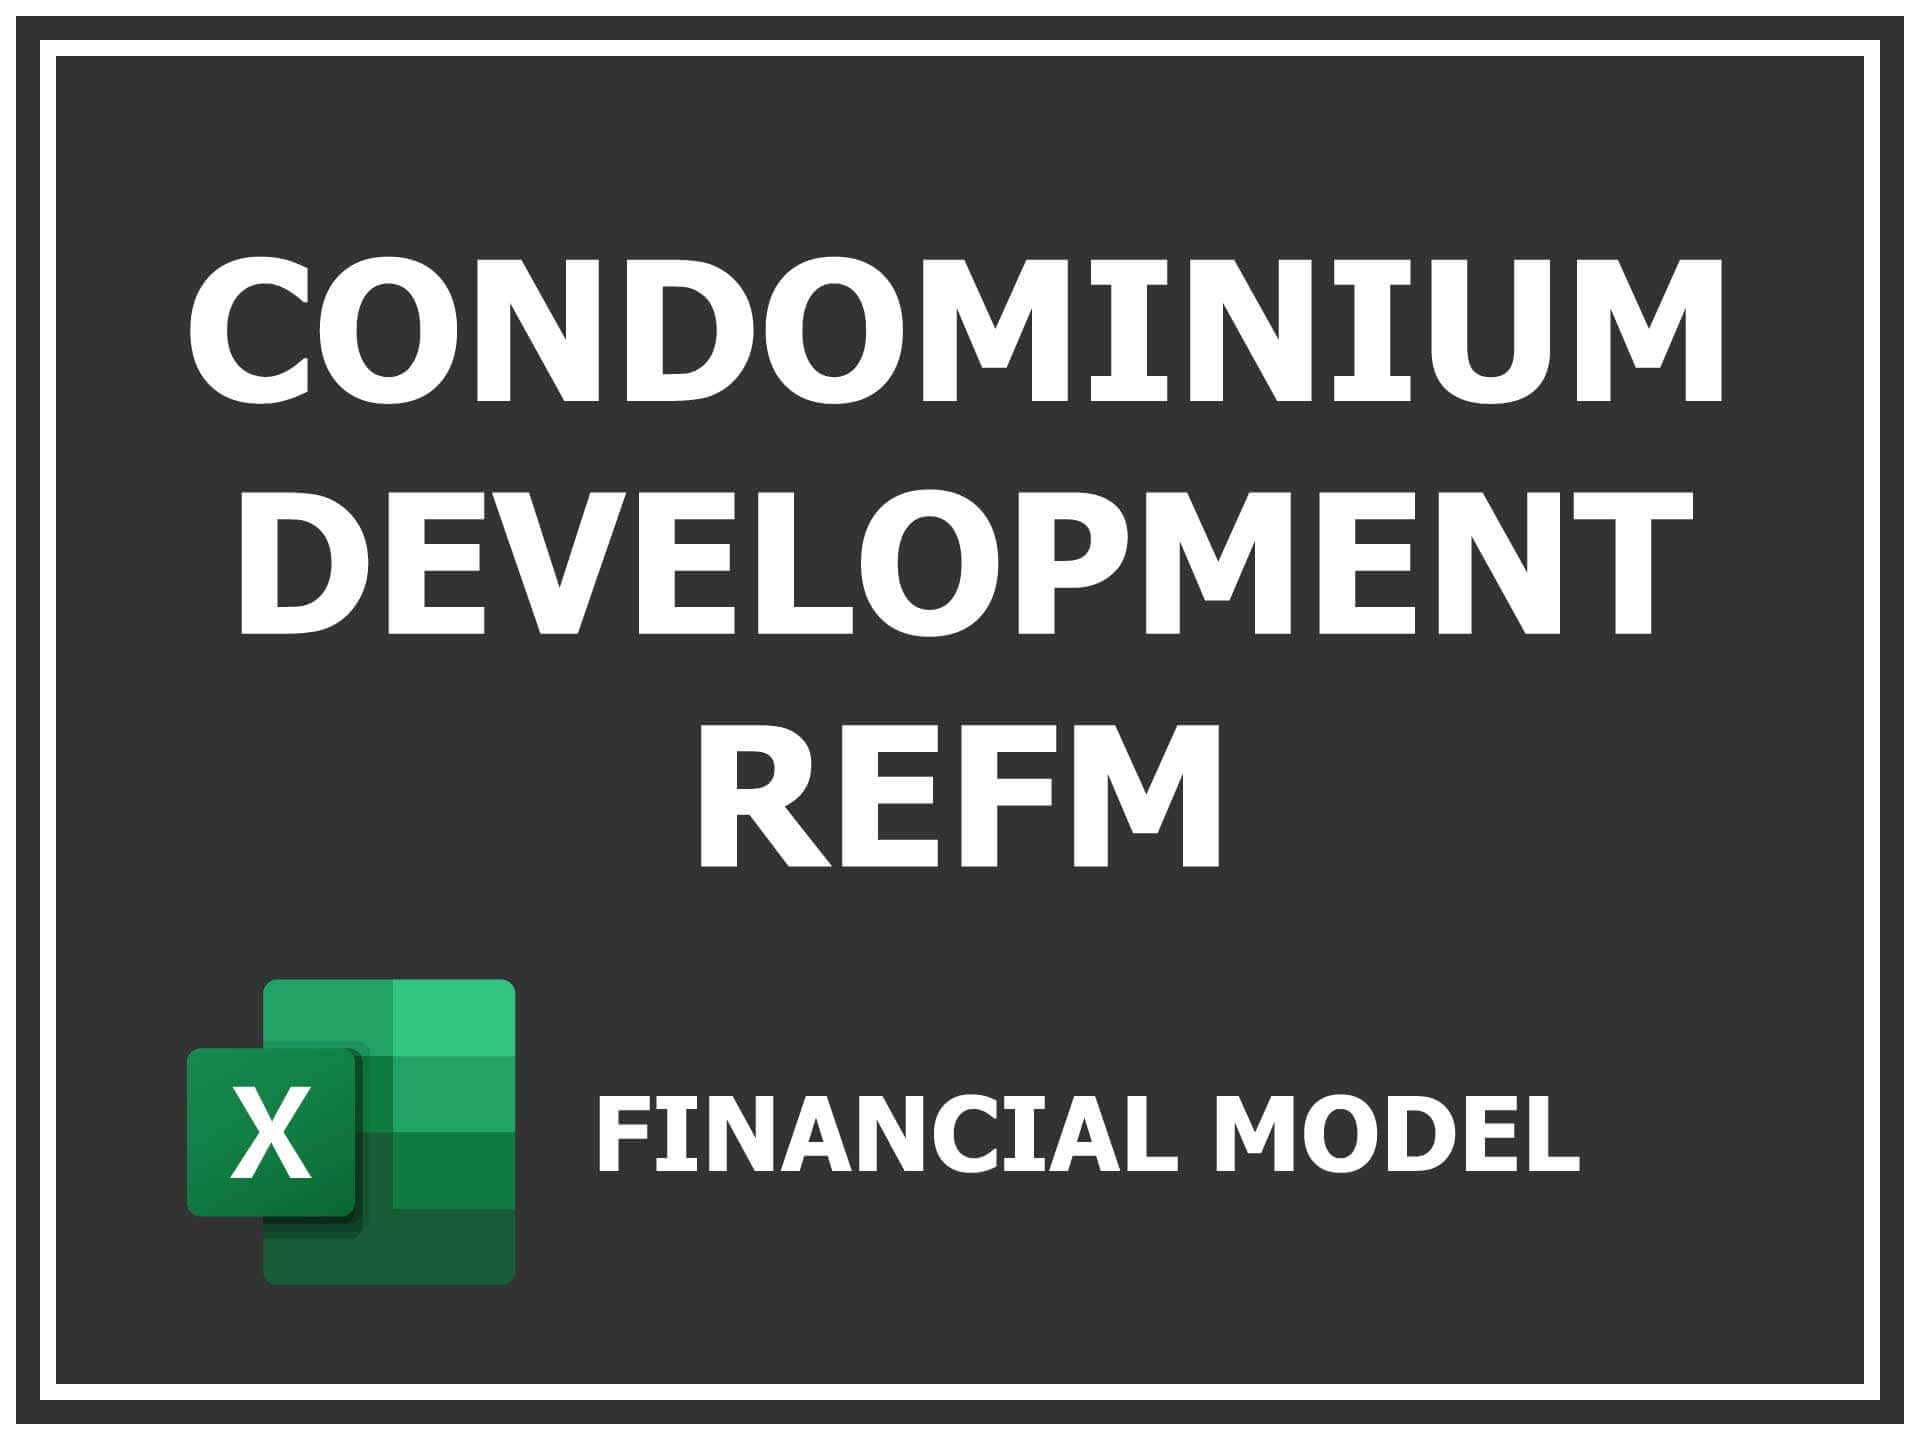 Condominium Development Refm